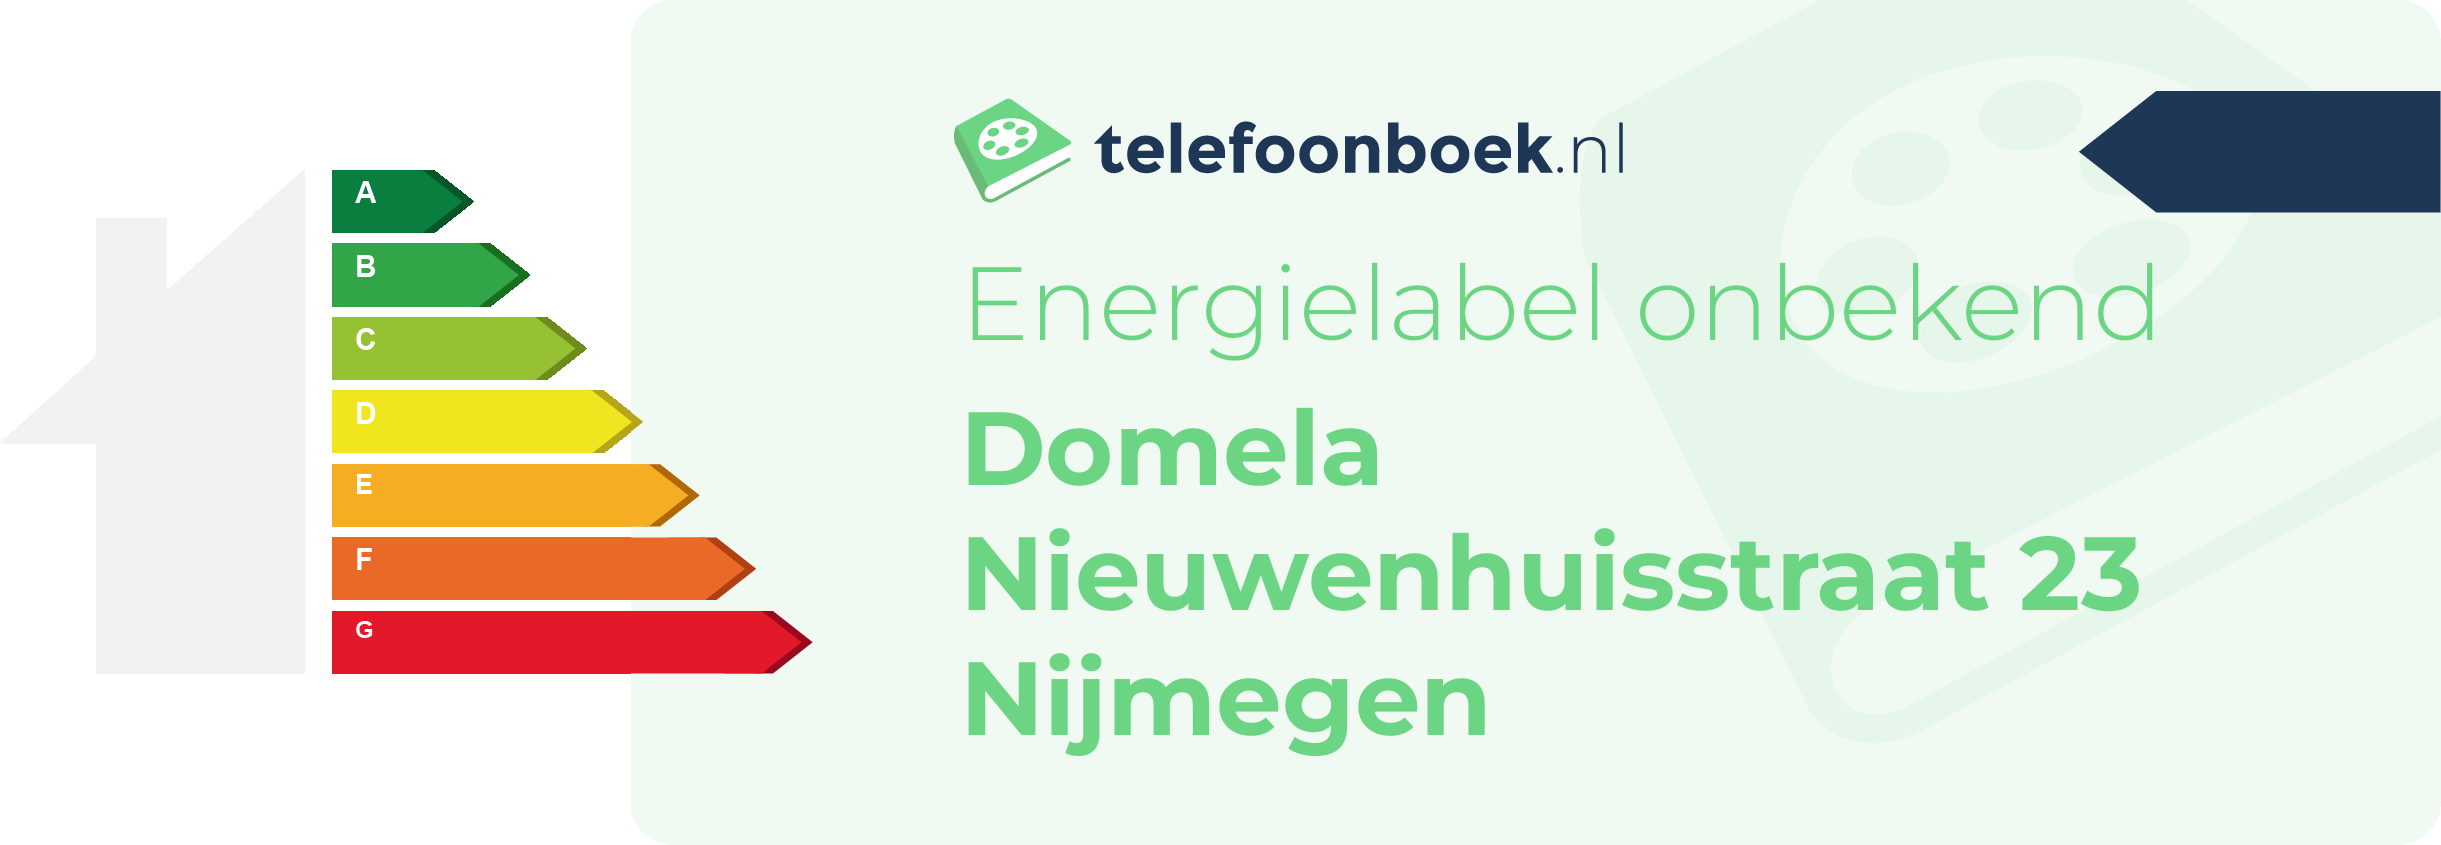 Energielabel Domela Nieuwenhuisstraat 23 Nijmegen